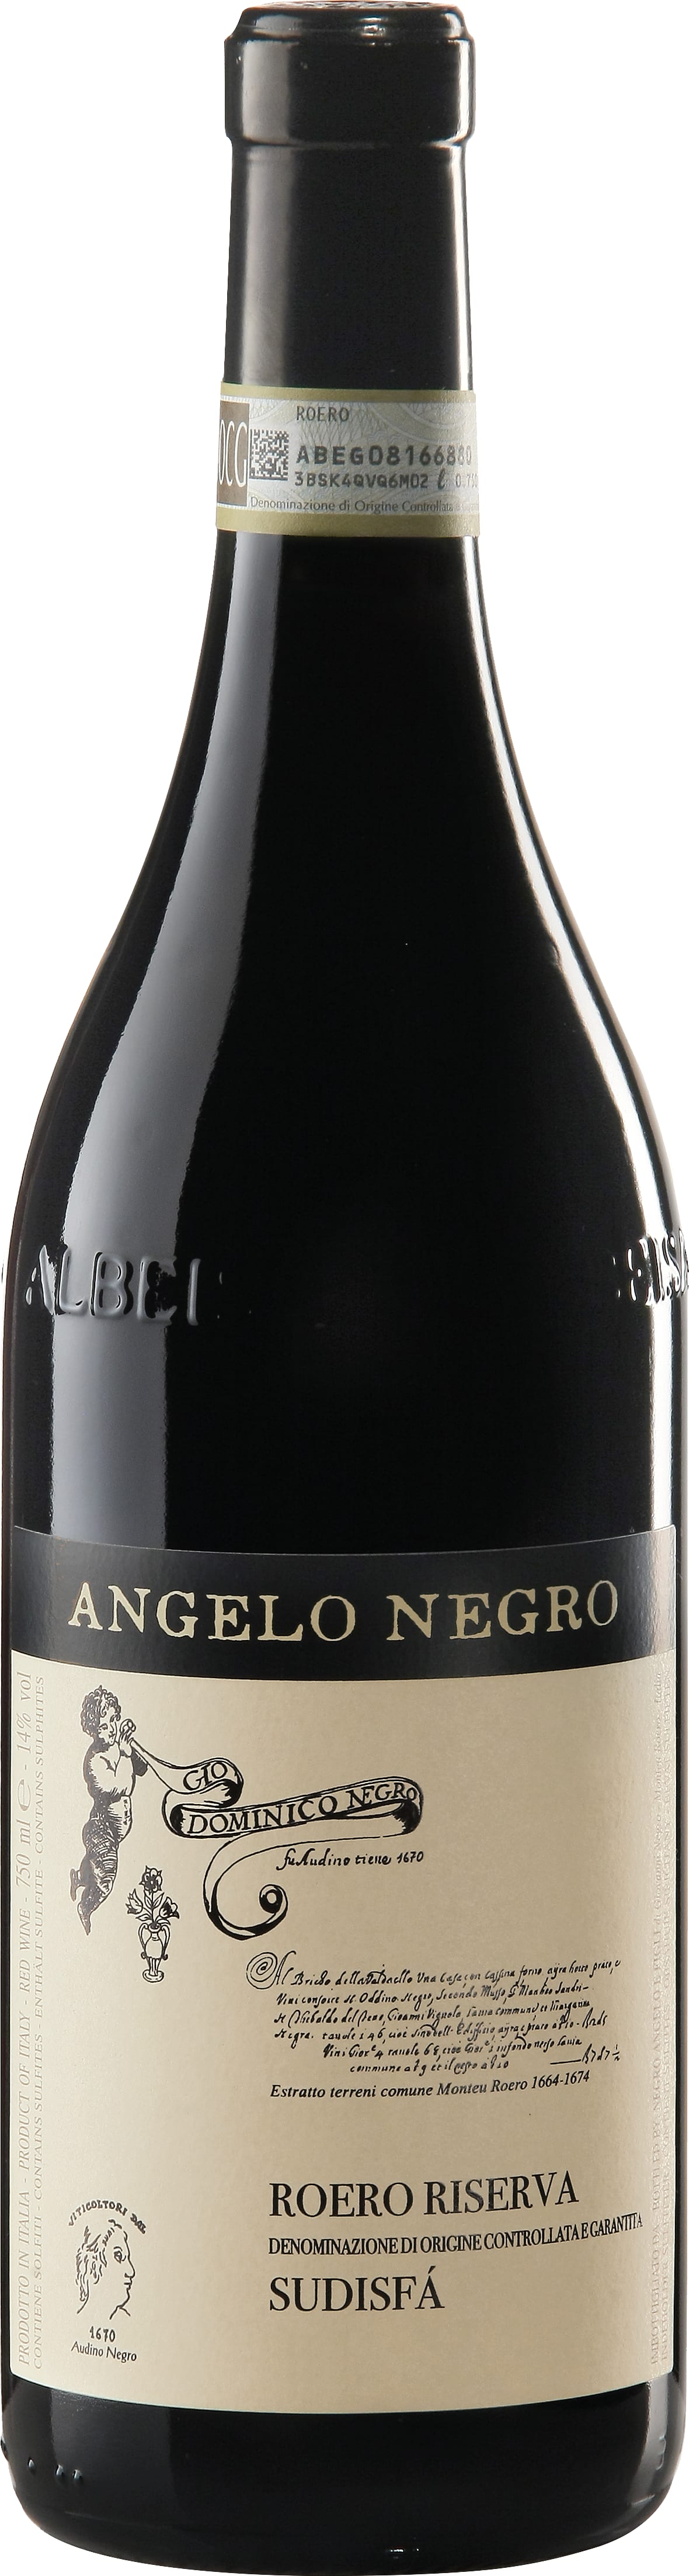 Azienda Agricola Negro Sudisfa Roero Nebbiolo 2019 75cl - Buy Azienda Agricola Negro Wines from GREAT WINES DIRECT wine shop